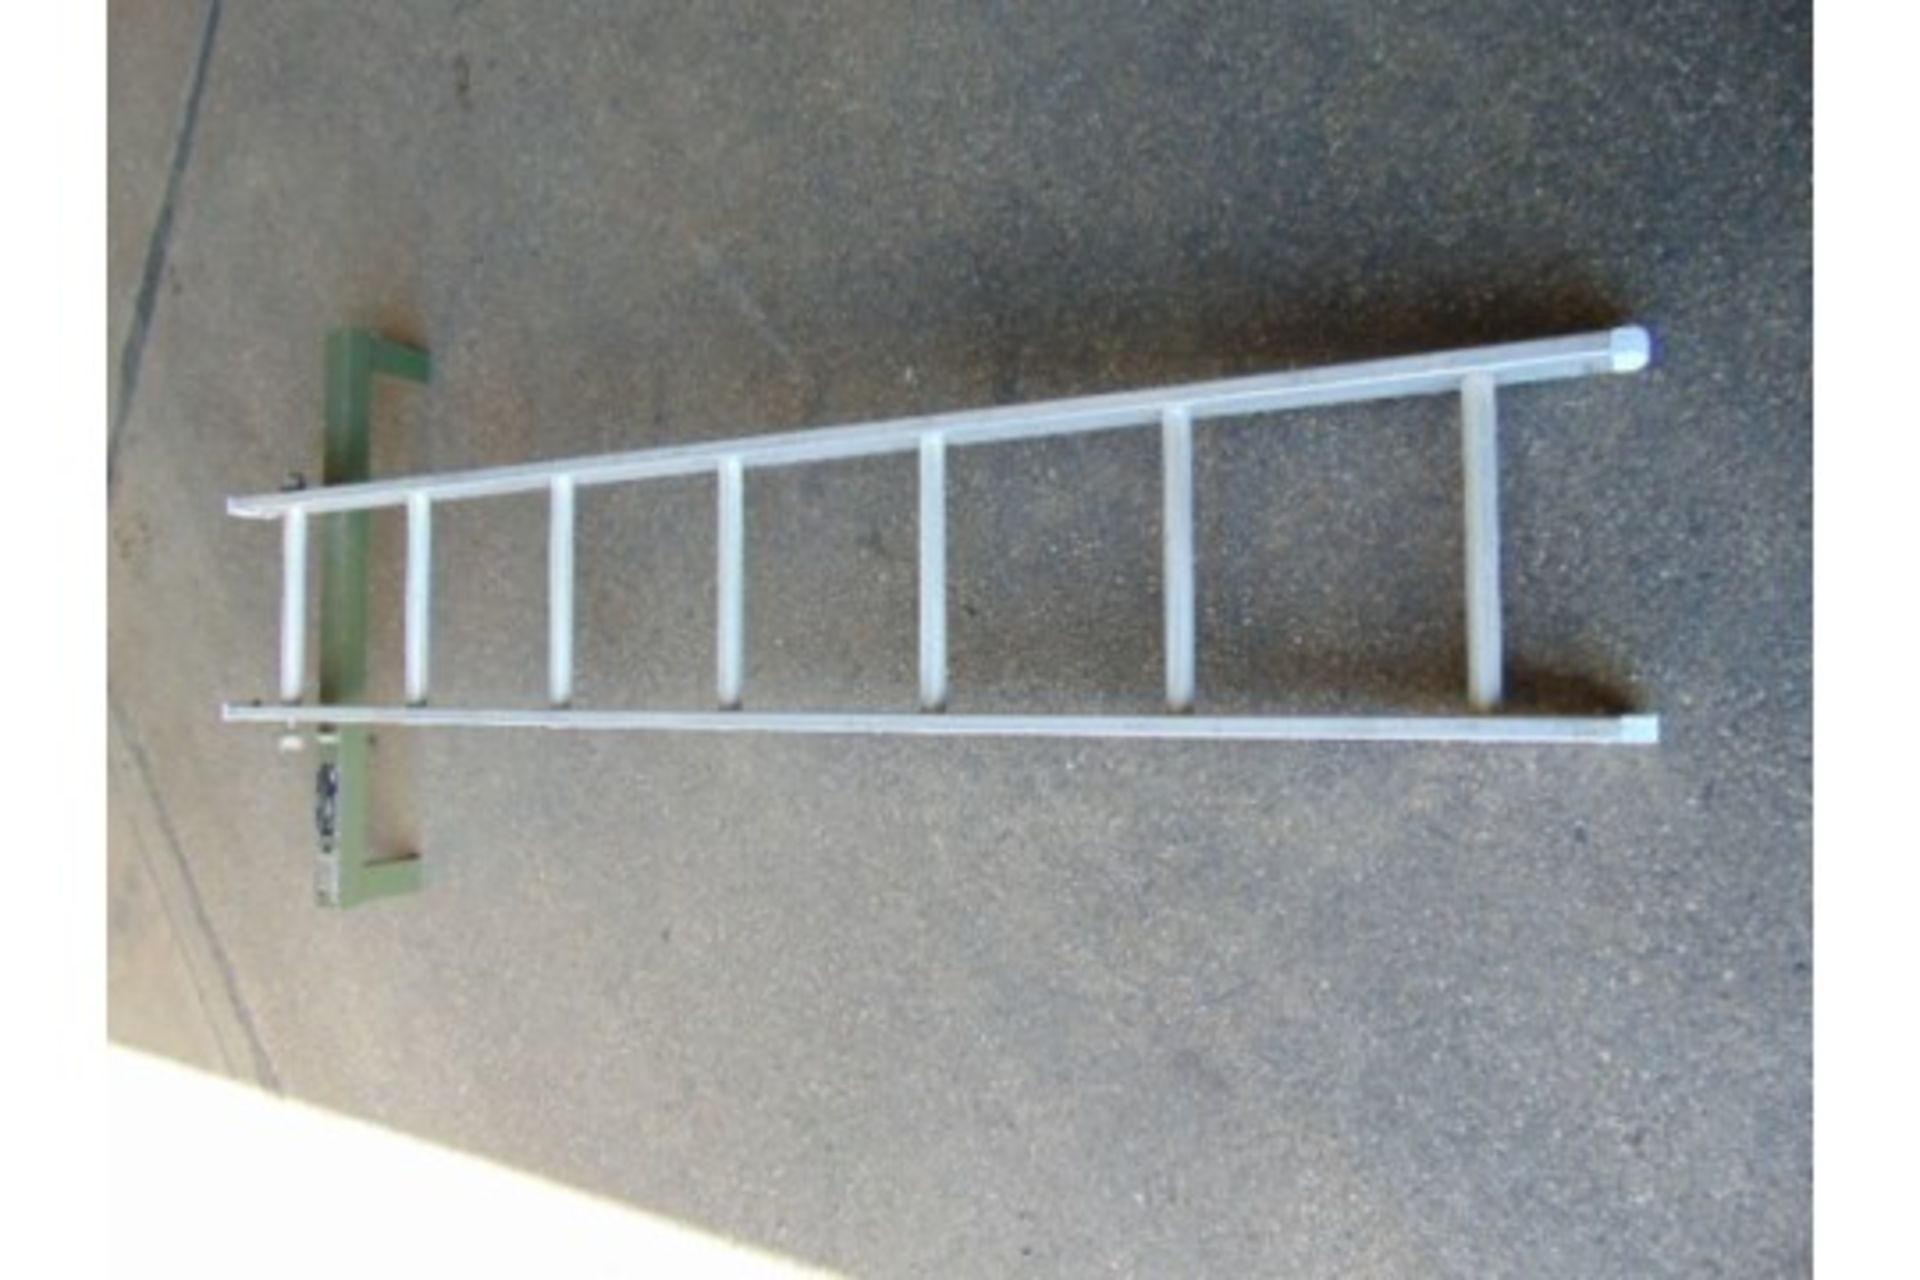 Sidewinder/Sparrow Transportation/Storage Cradle Ladder - Image 3 of 5